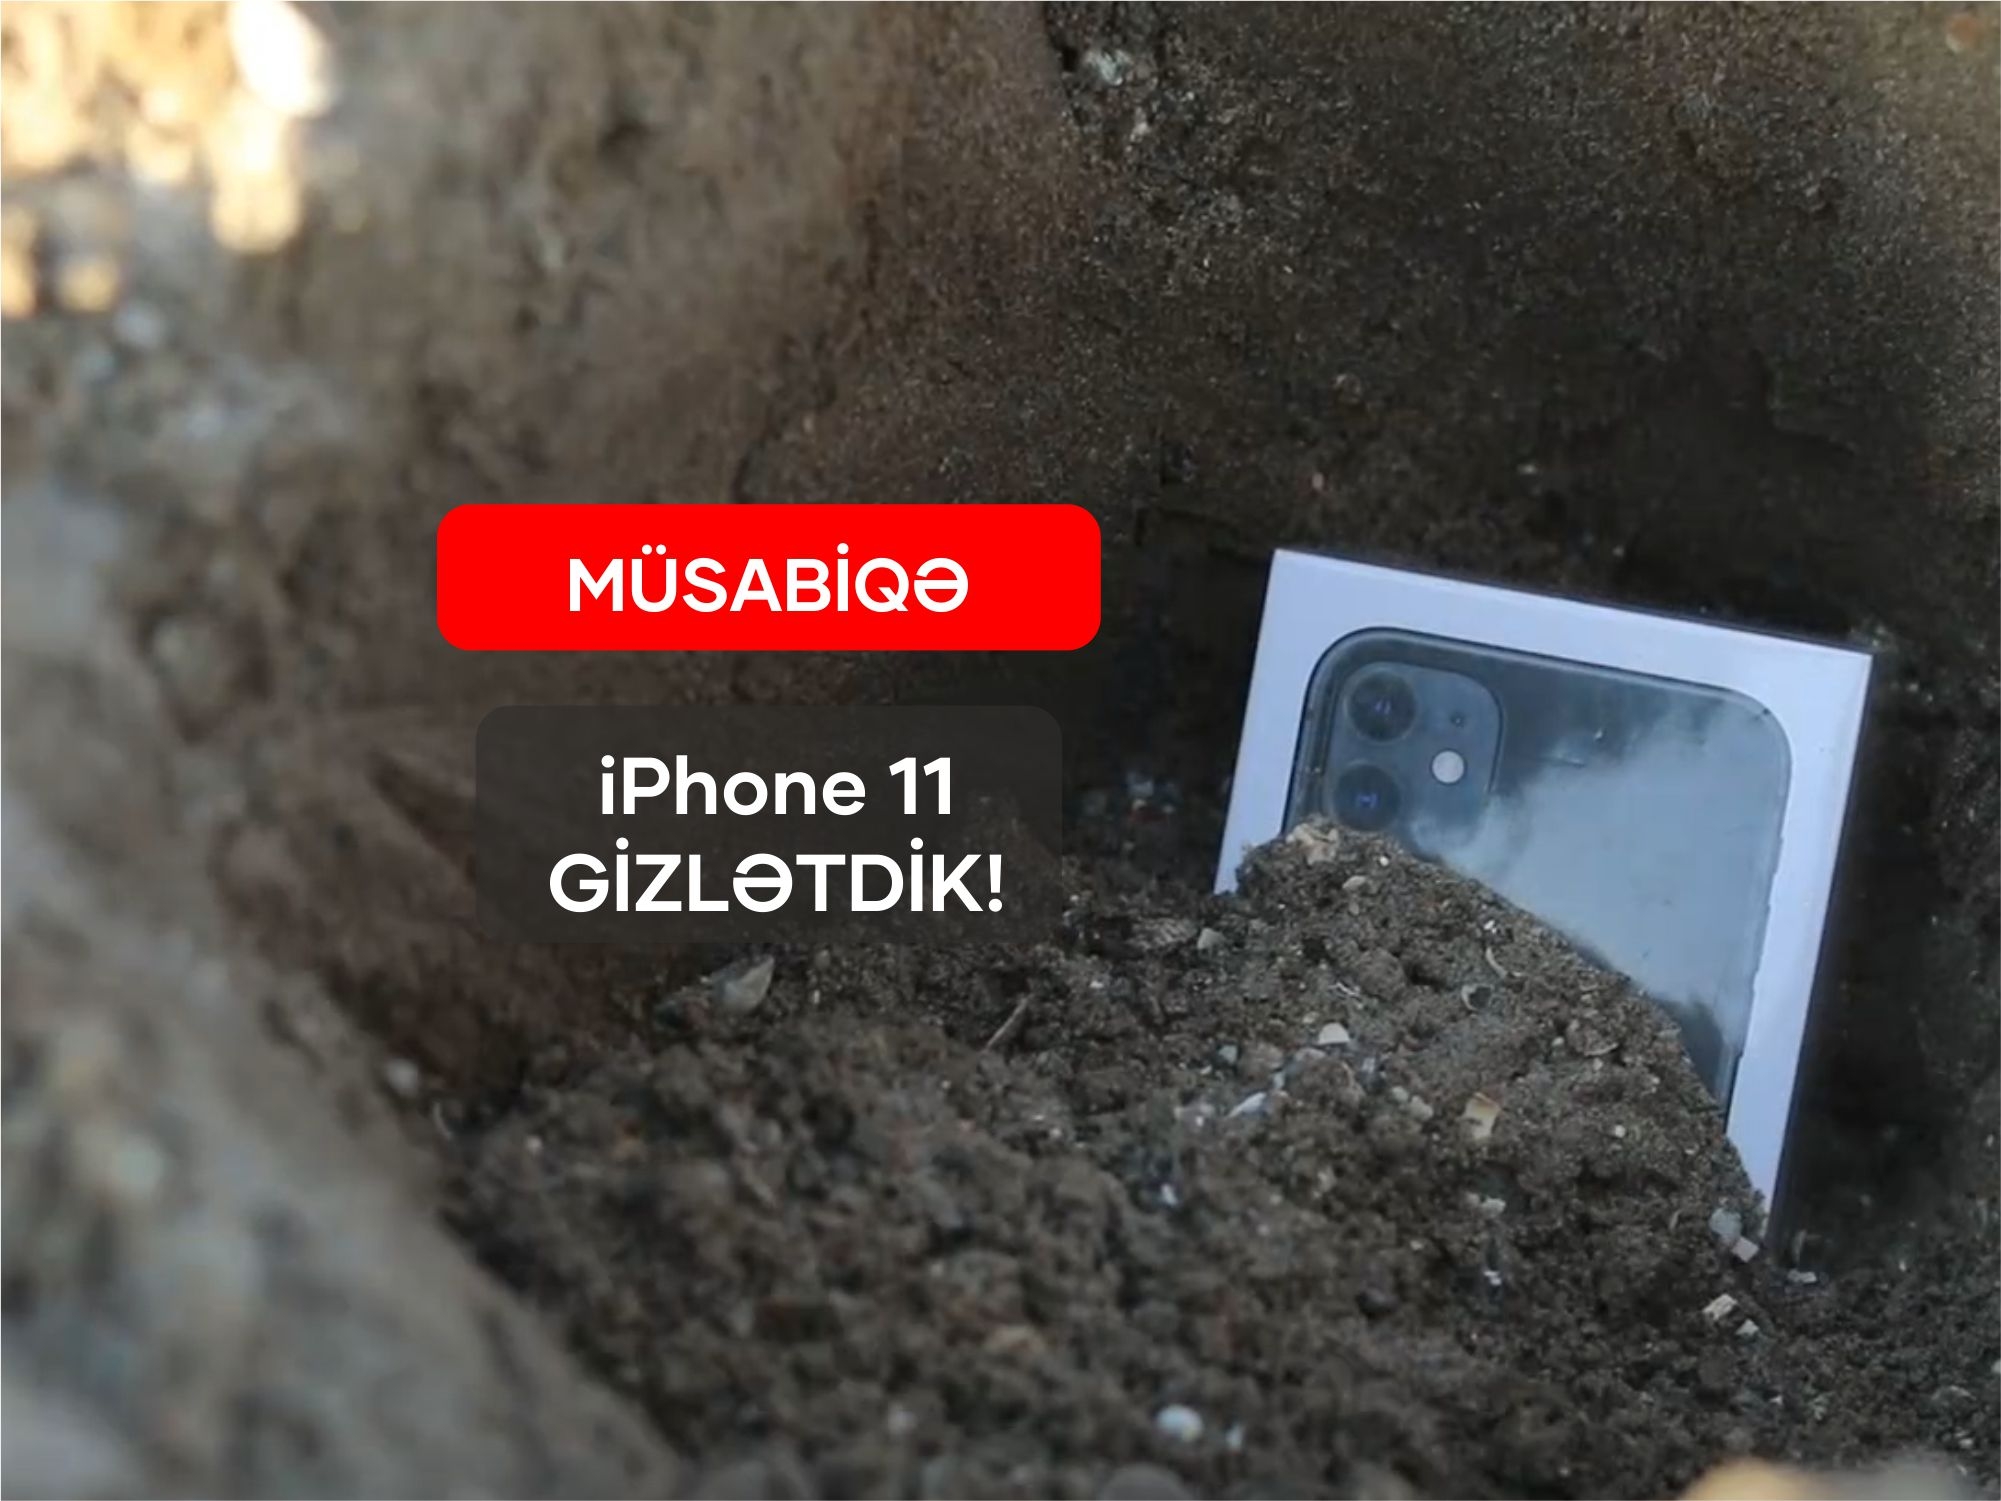 В Баку закопали iPhone 11 – ПОБЕДИТ ТОТ, КТО НАЙДЕТ ПЕРВЫМ